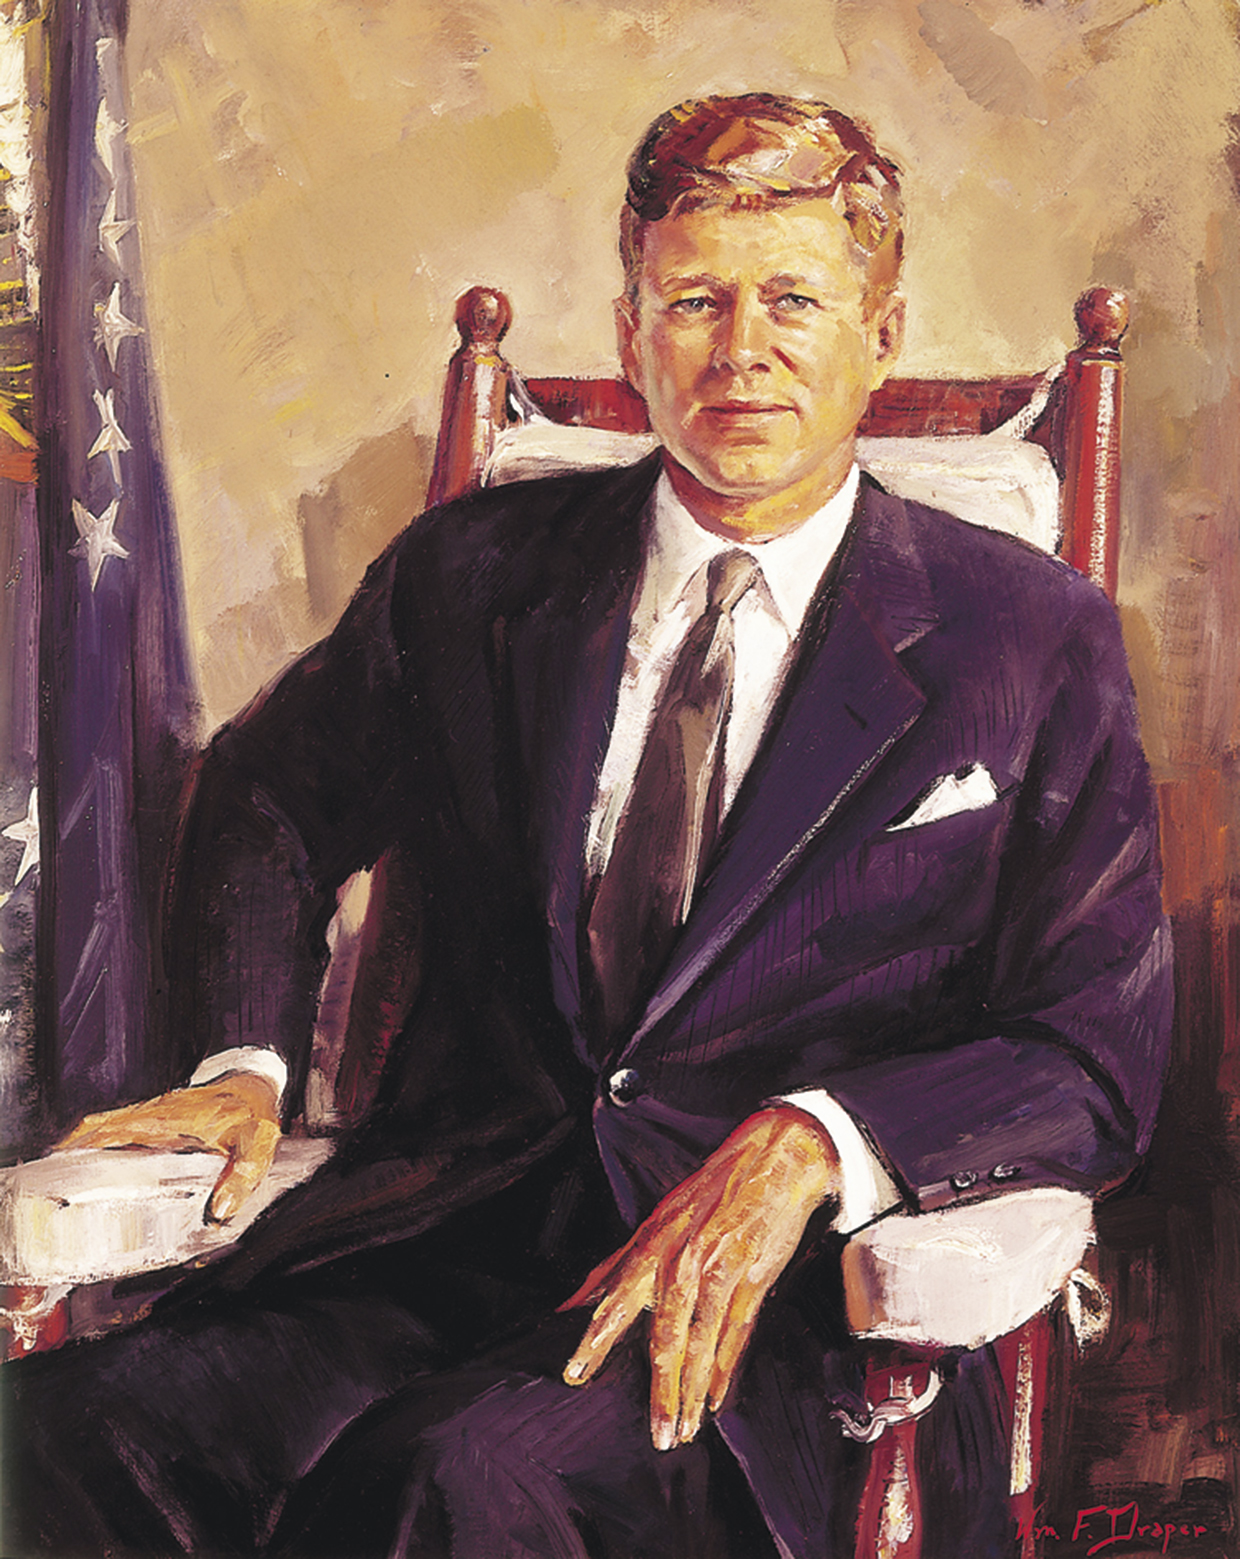 Quantos anos tinha JFK quando ele se tornou presidente?